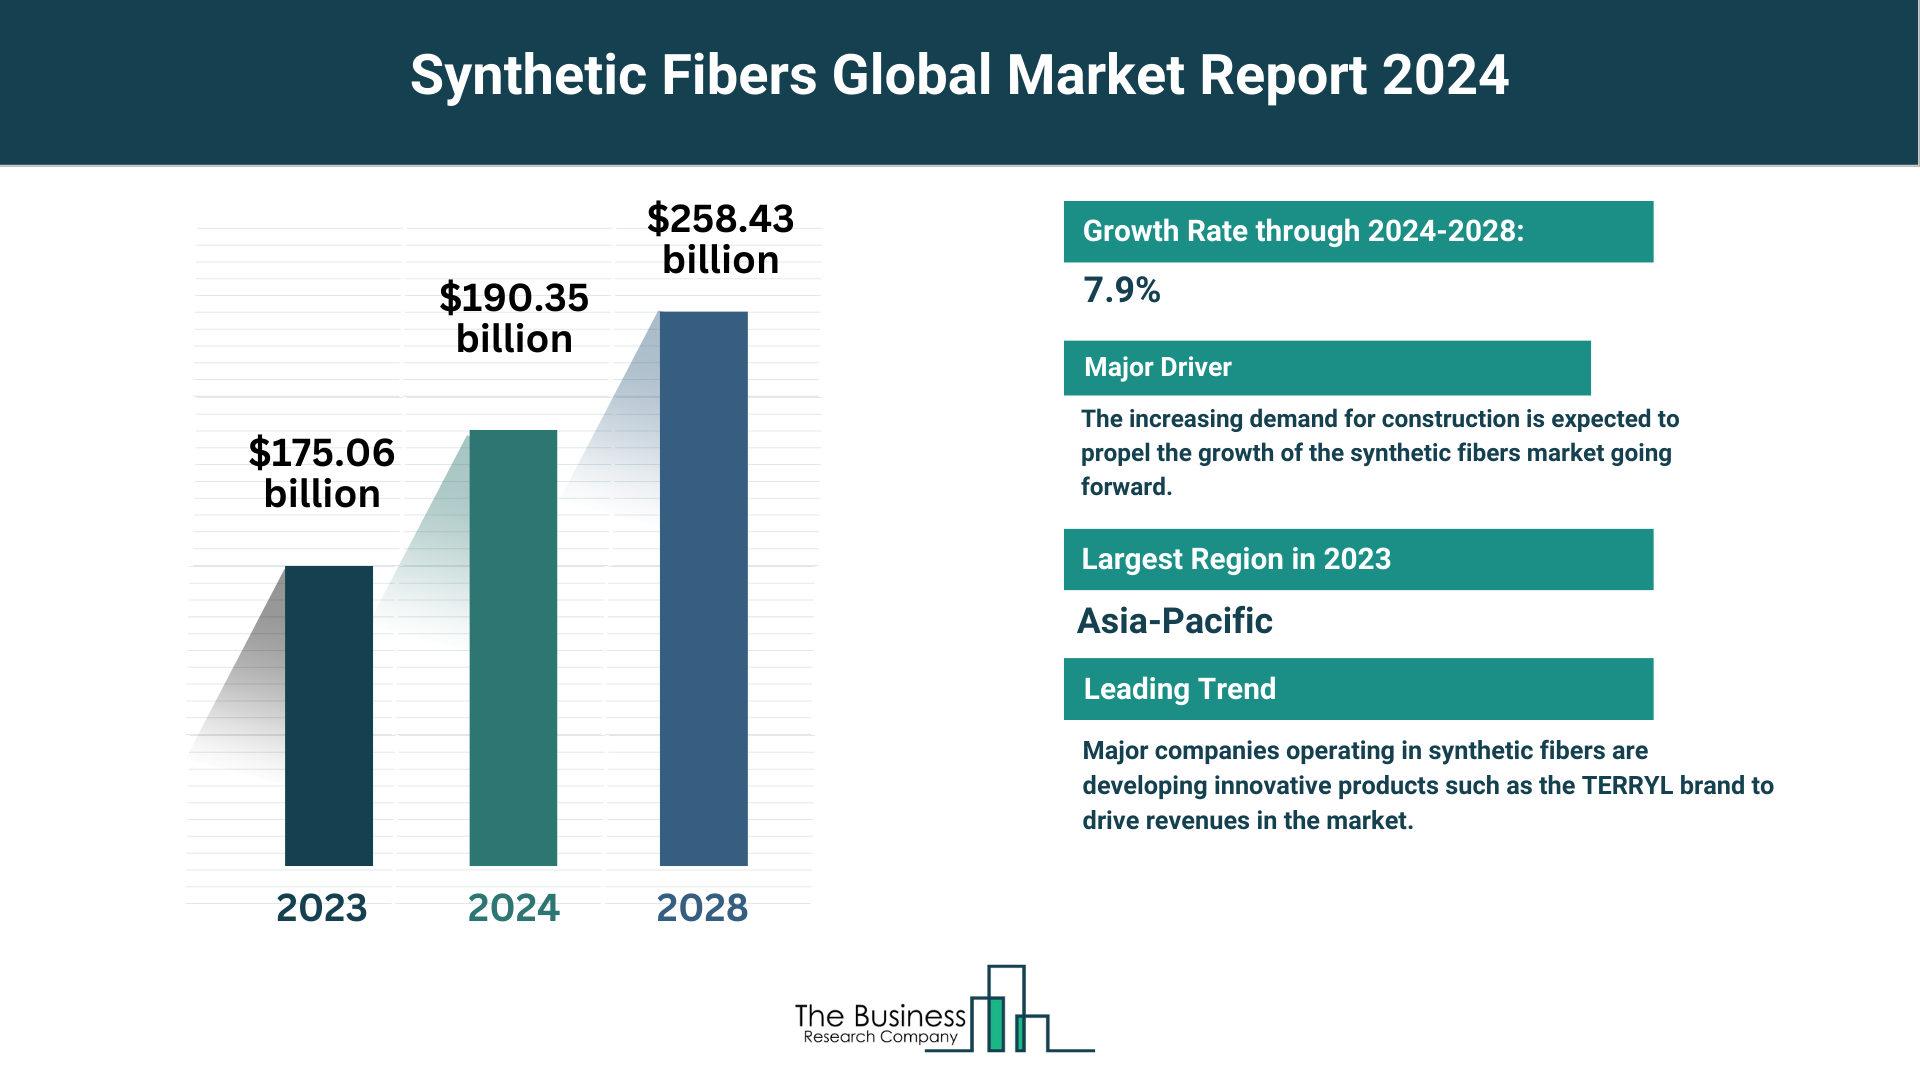 Global Synthetic Fibers Market